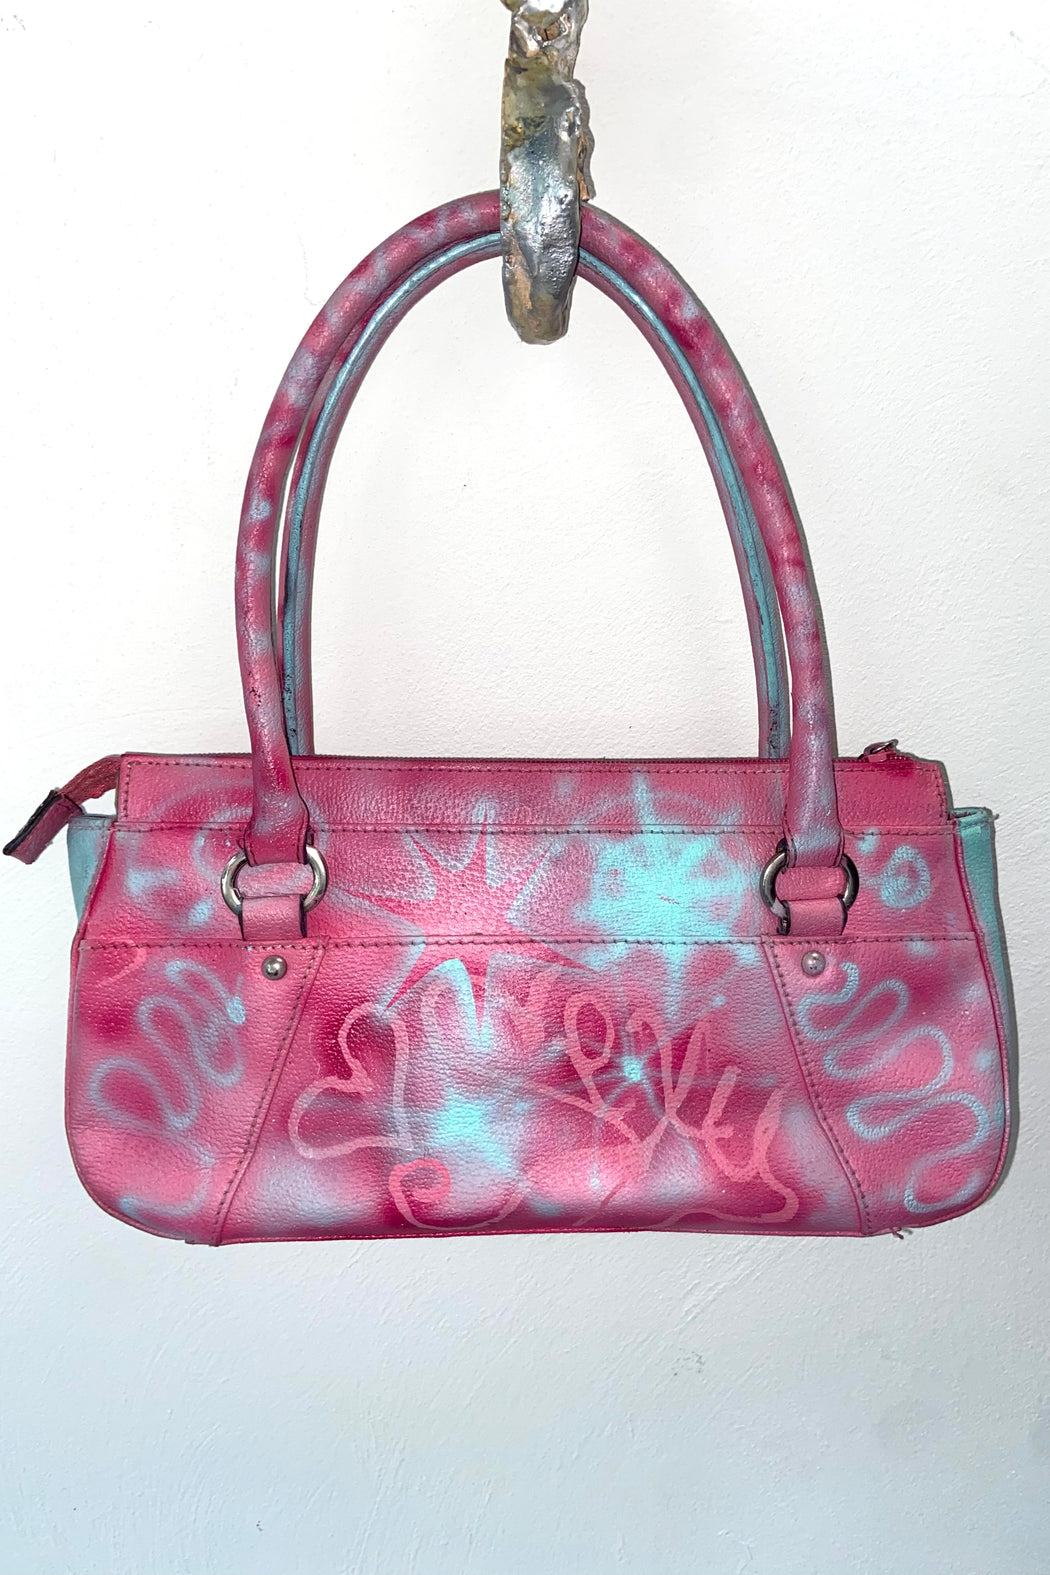 Anne’s Klein Pink Handbag